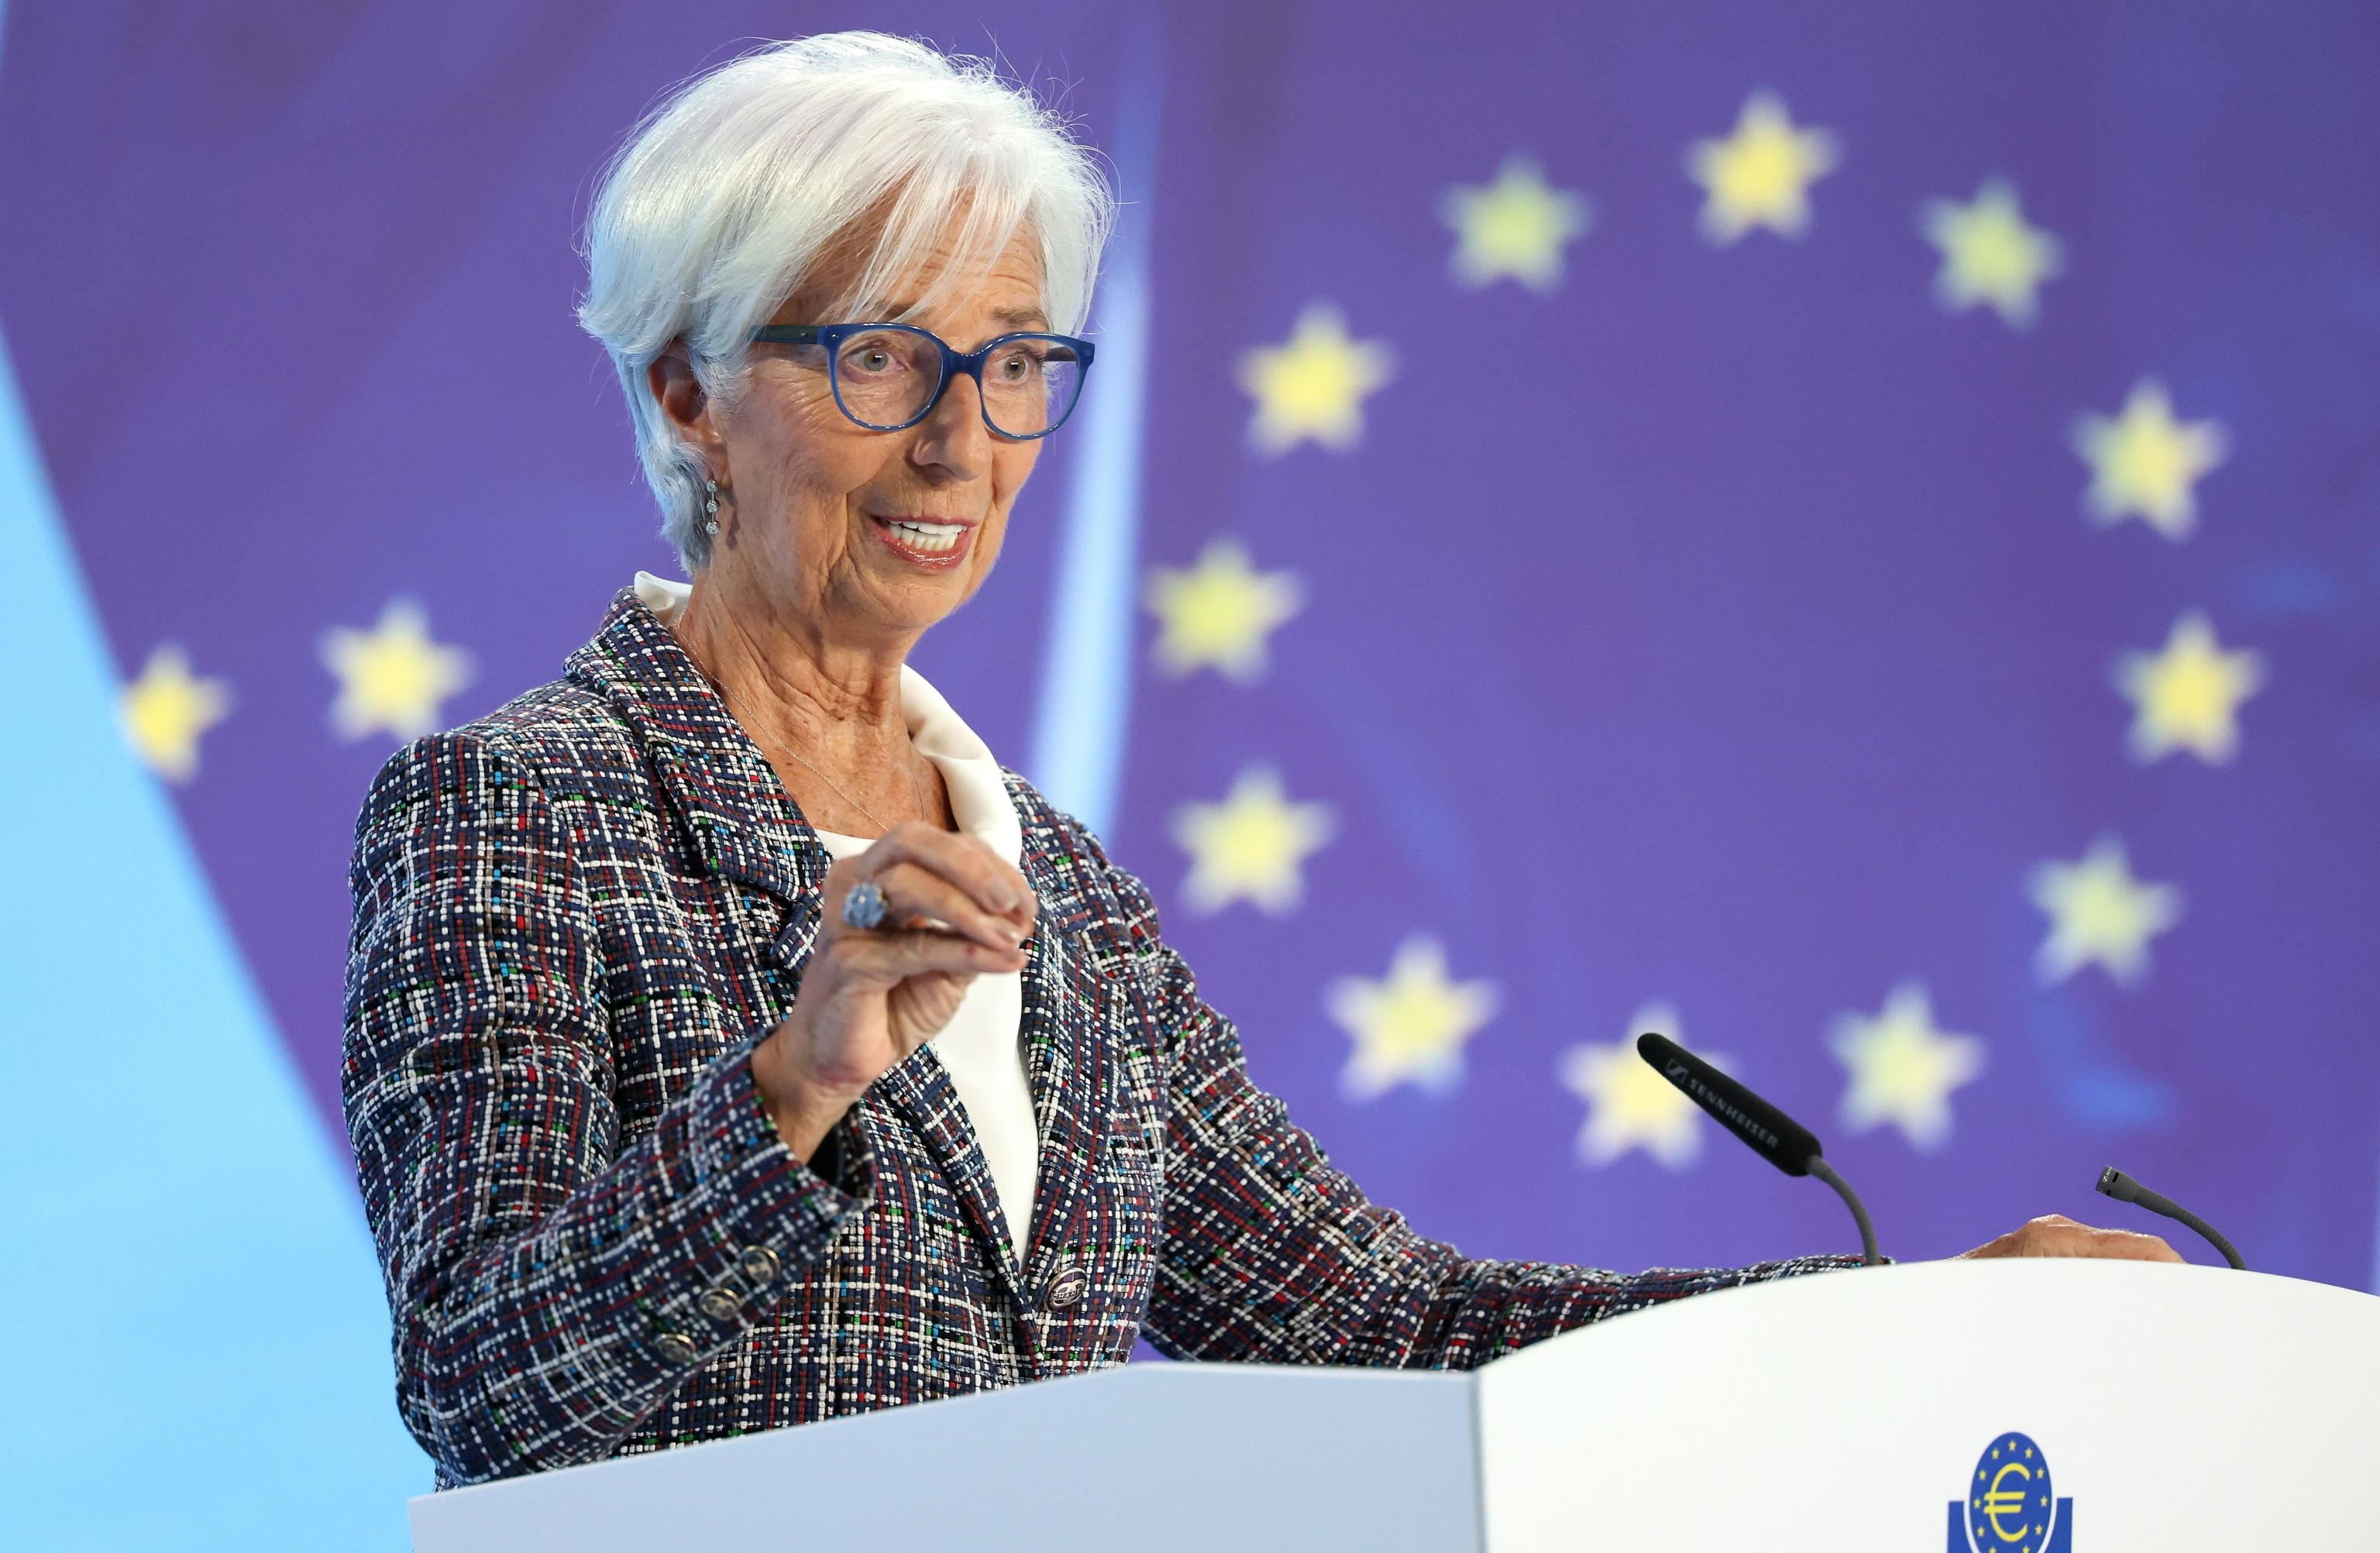 La presidente della Bce Christine Lagarde nella conferenza dopo la riunione del consiglio direttivo